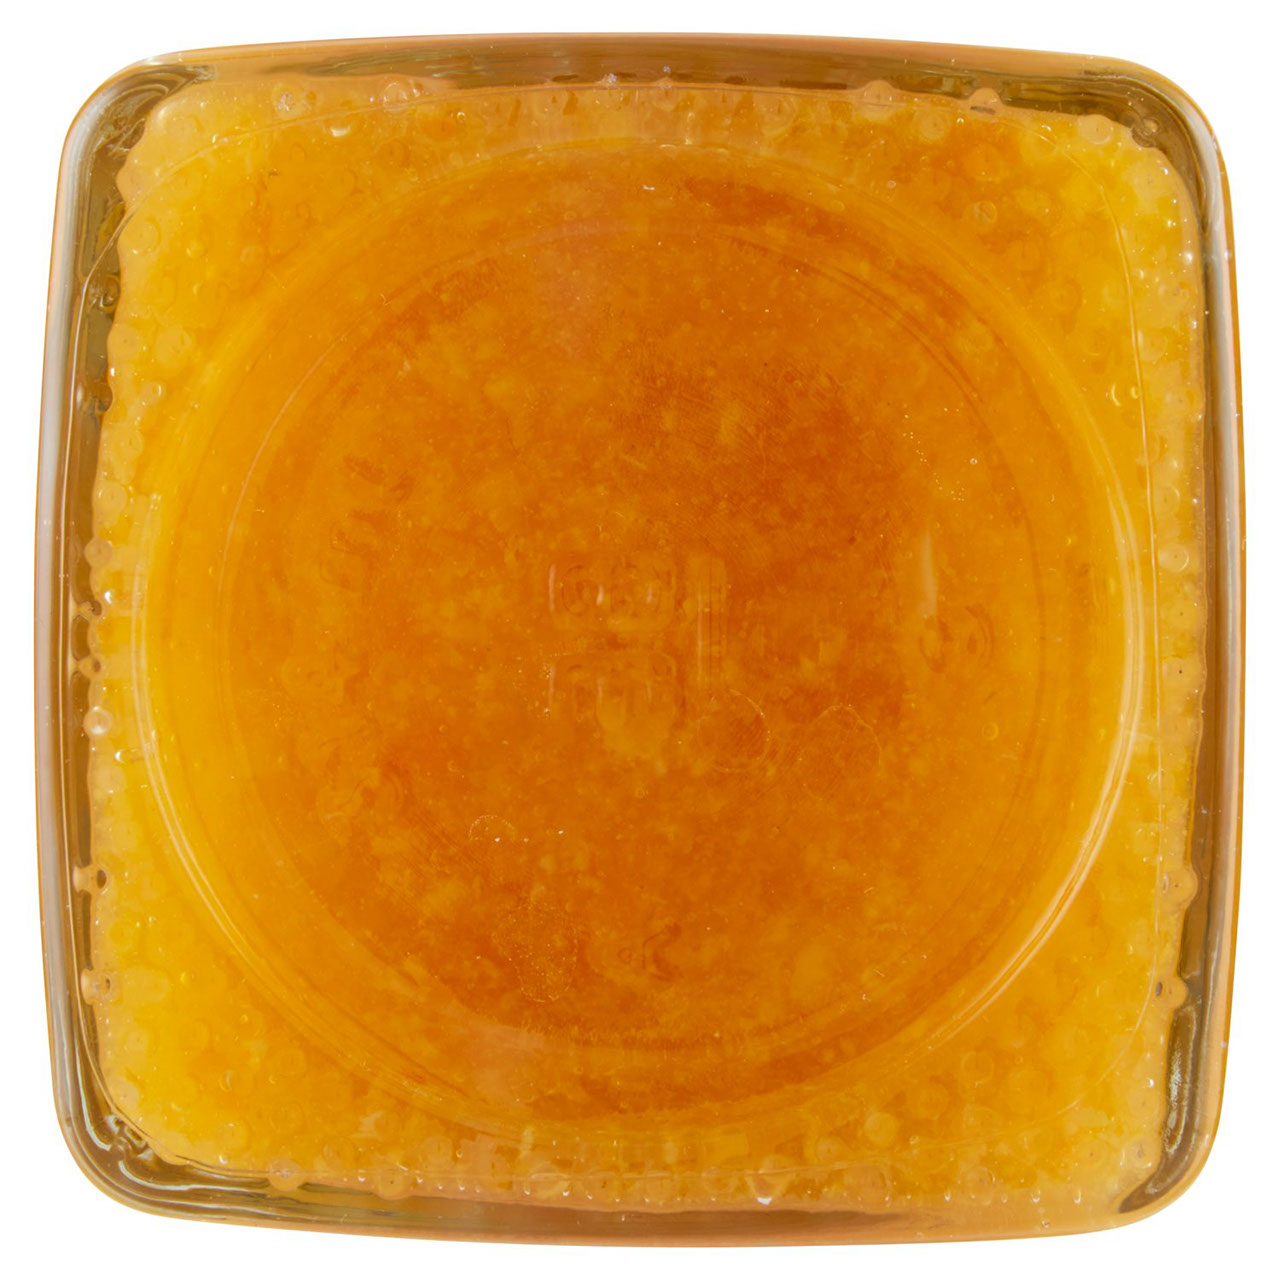 Marmellata di Mandarini di Sicilia 350 g Conad